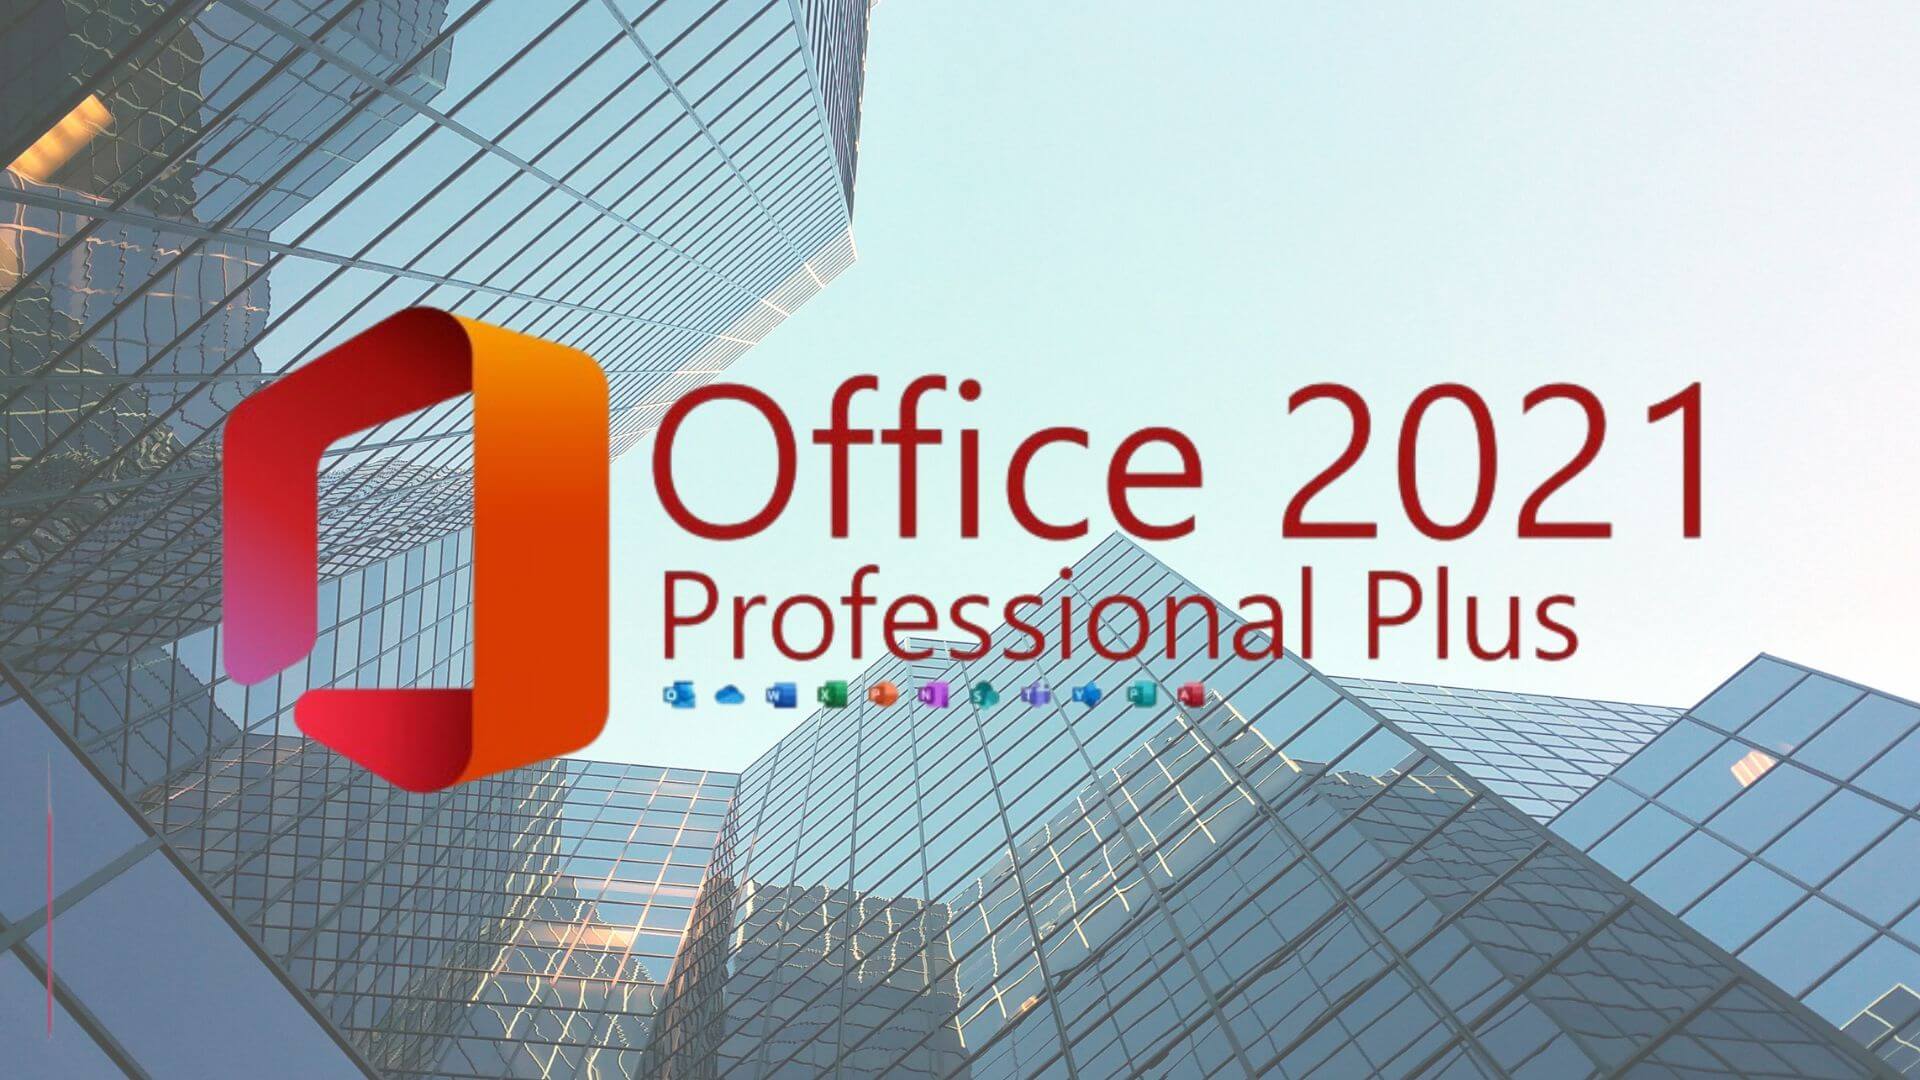 Microsoft Office 2021 Professional Plus herunterladen